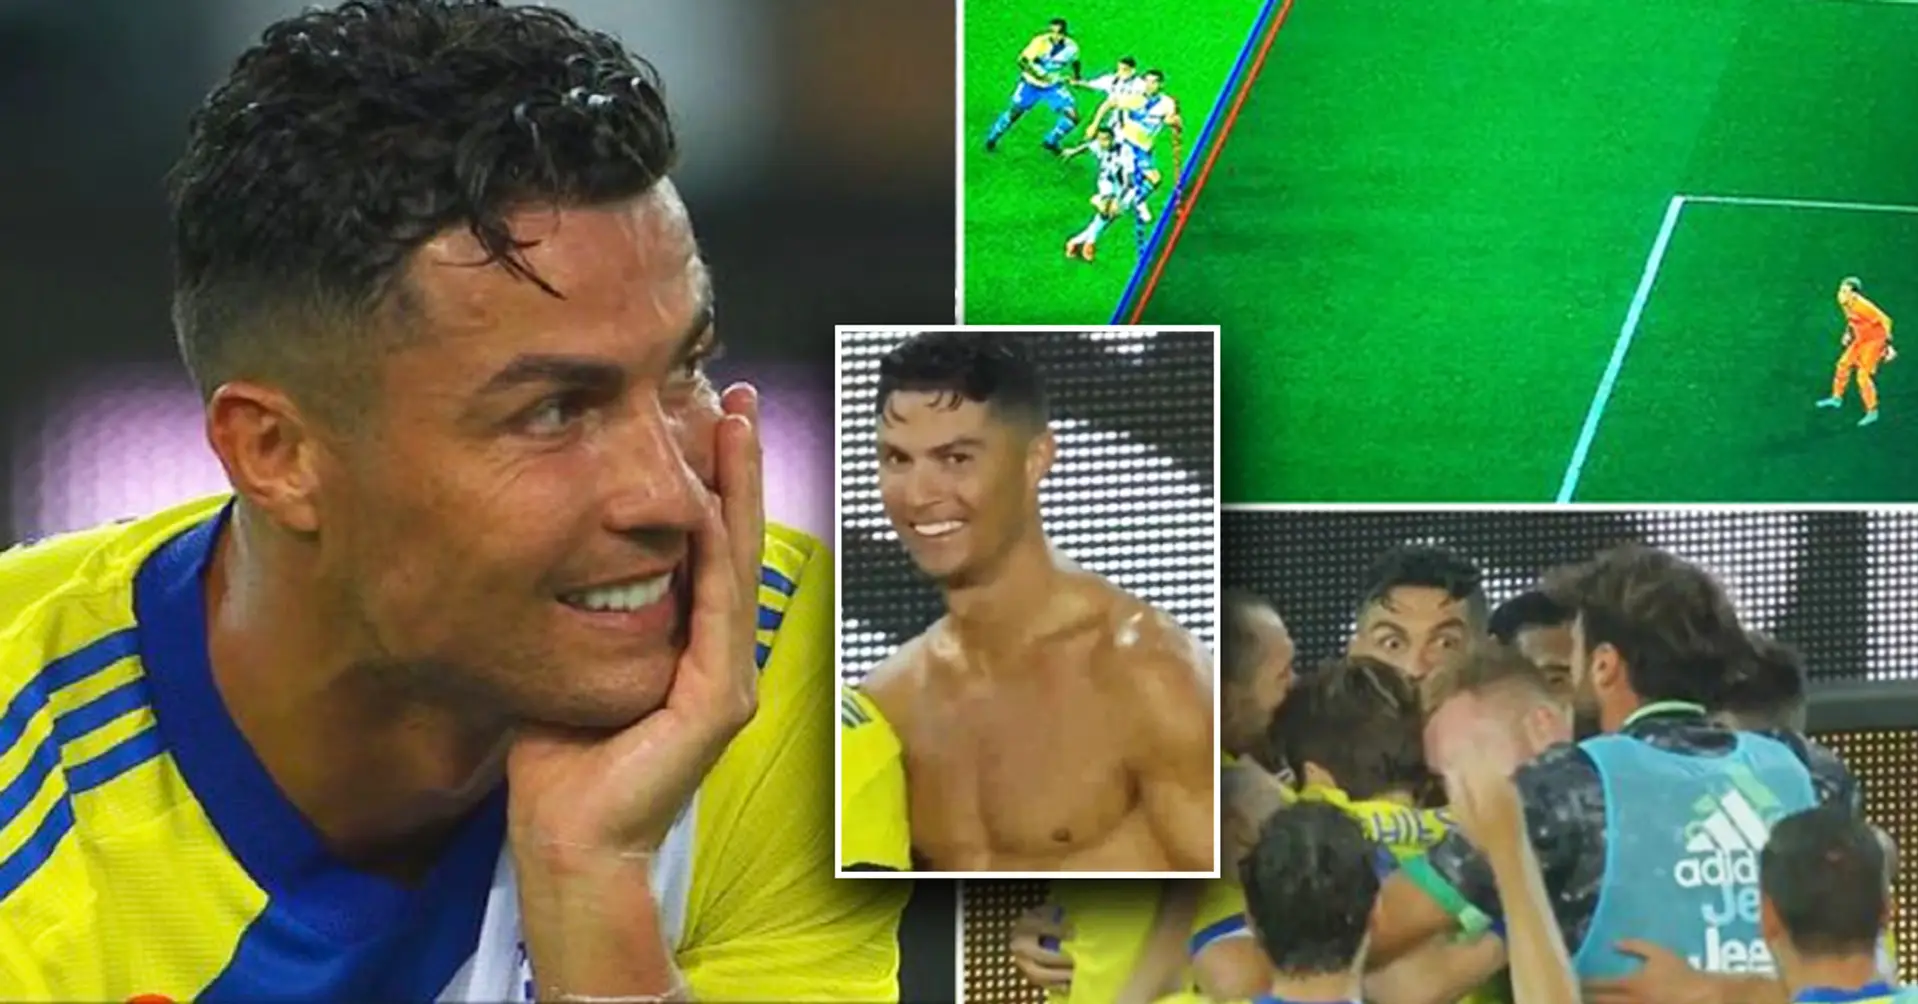 Cristiano Ronaldo a enlevé son maillot pour célébrer le but, a reçu un carton jaune, puis le but a été refusé